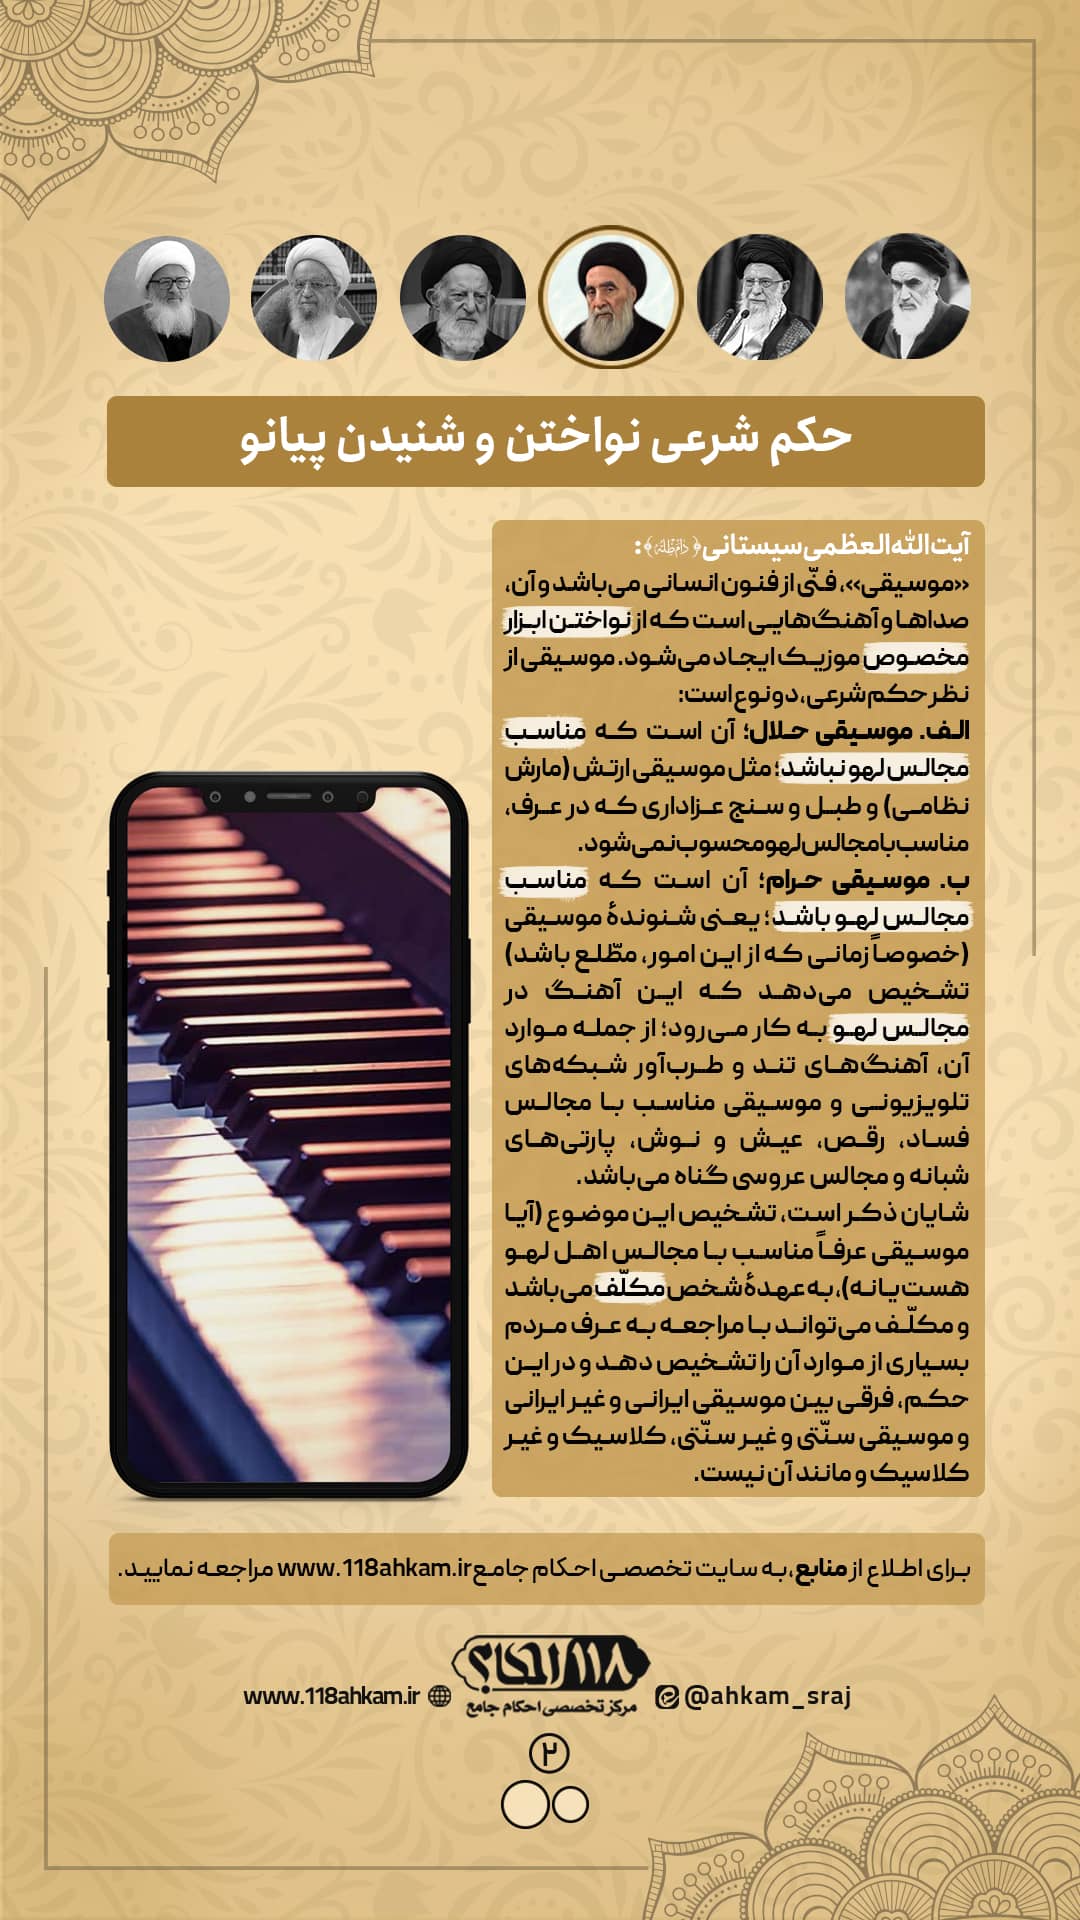 حکم شرعی نواختن و شنیدن پیانو " به مناسبت ۲۹ مارس، روز جهانی پیانو "